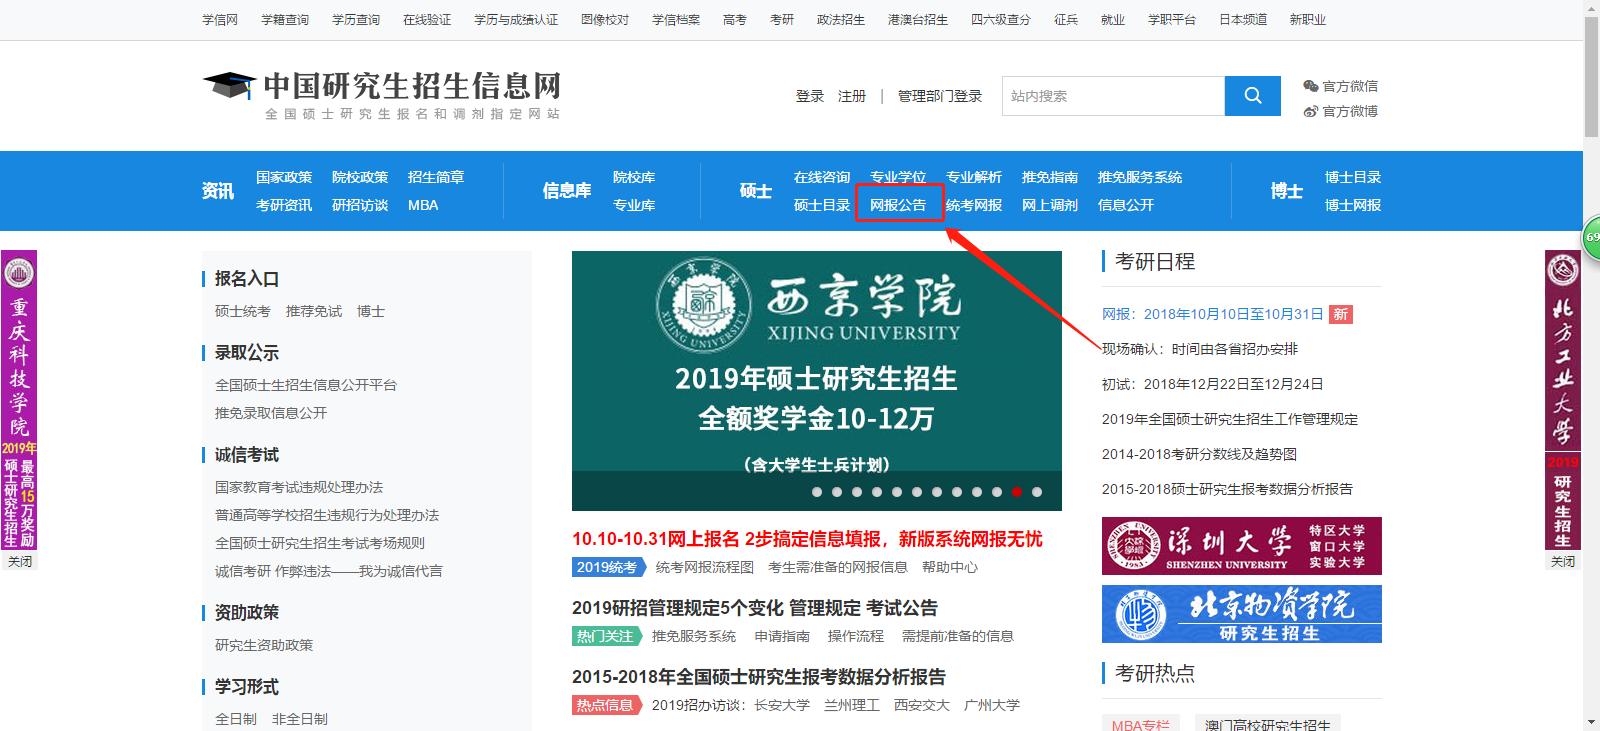 中国研究生招生信息网（即研招网）官网首页